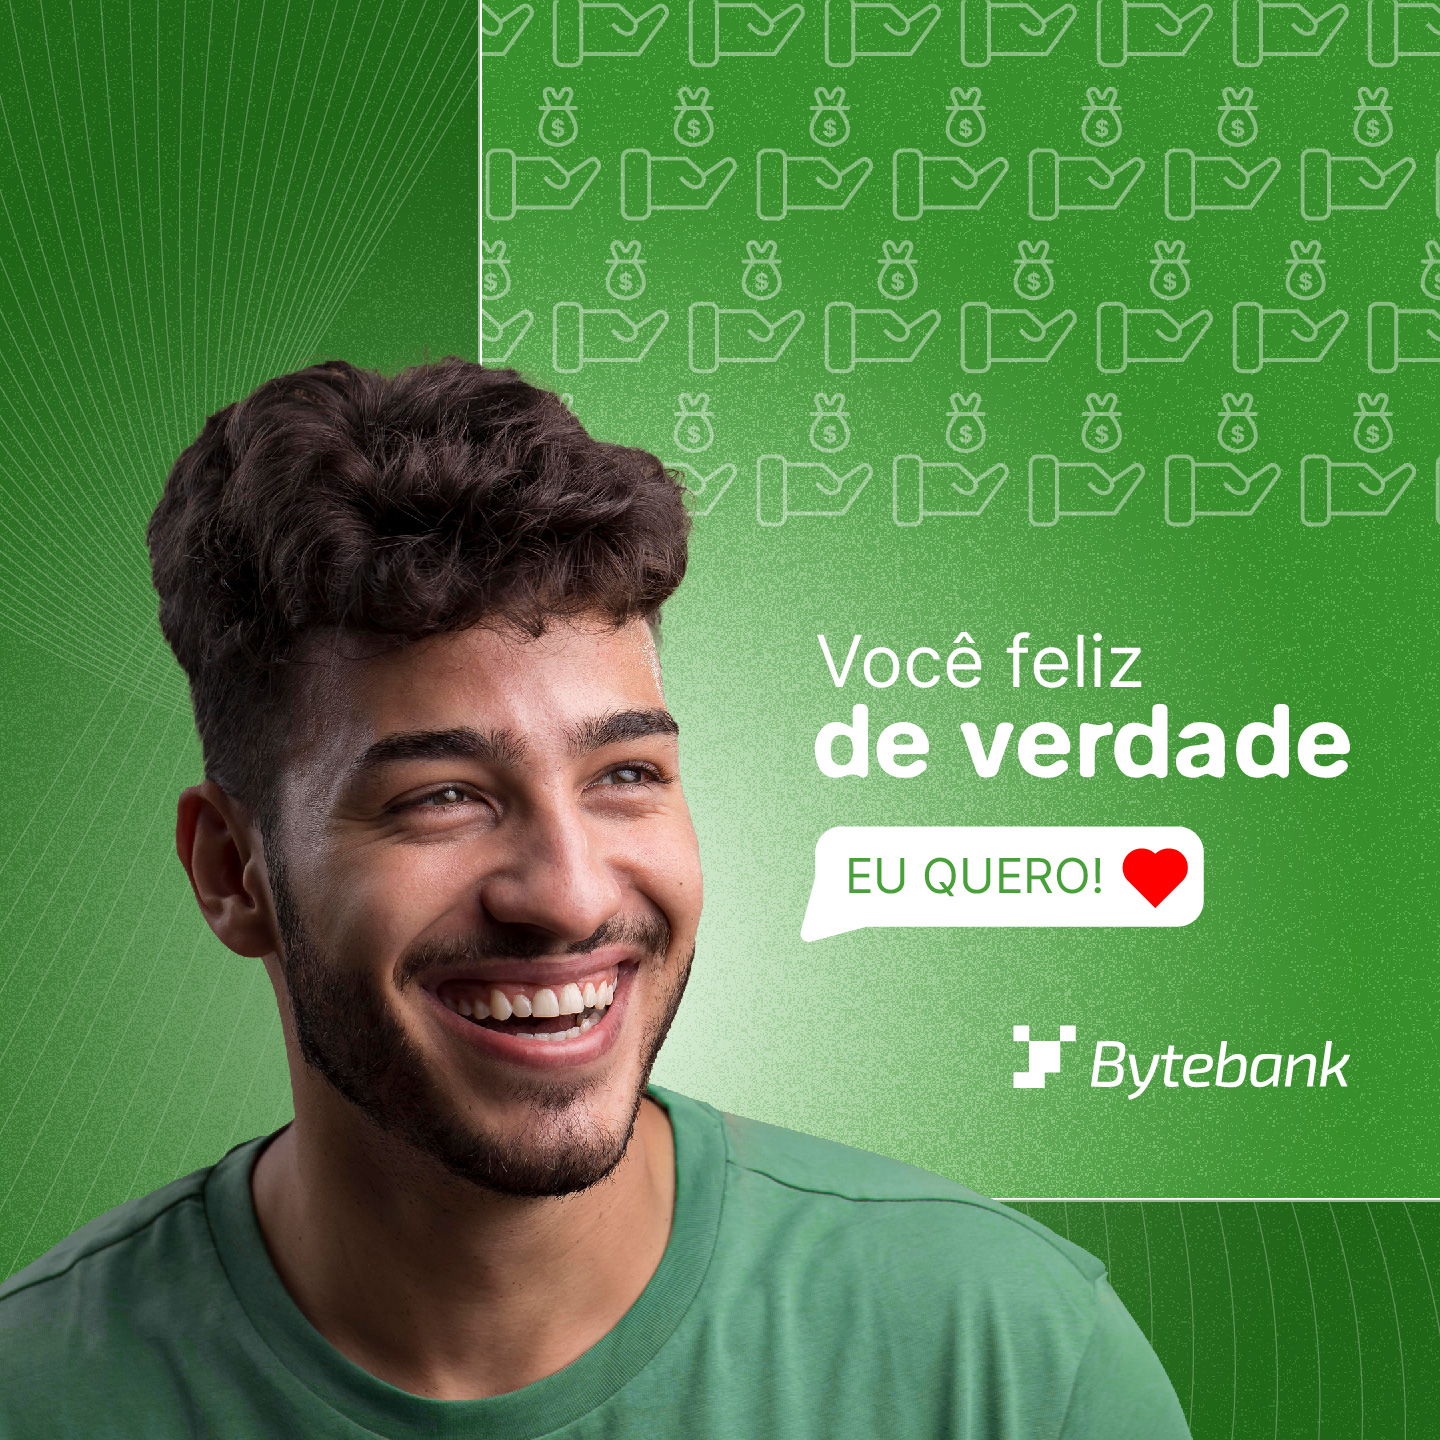 Imagem de um banner para publicação em redes sociais. Nele, há diversos grafismos, além da fotografia de um modelo sorrindo e dos dizeres “Você feliz de verdade” e “Eu quero”, acompanhados do logo da empresa Bytebank.